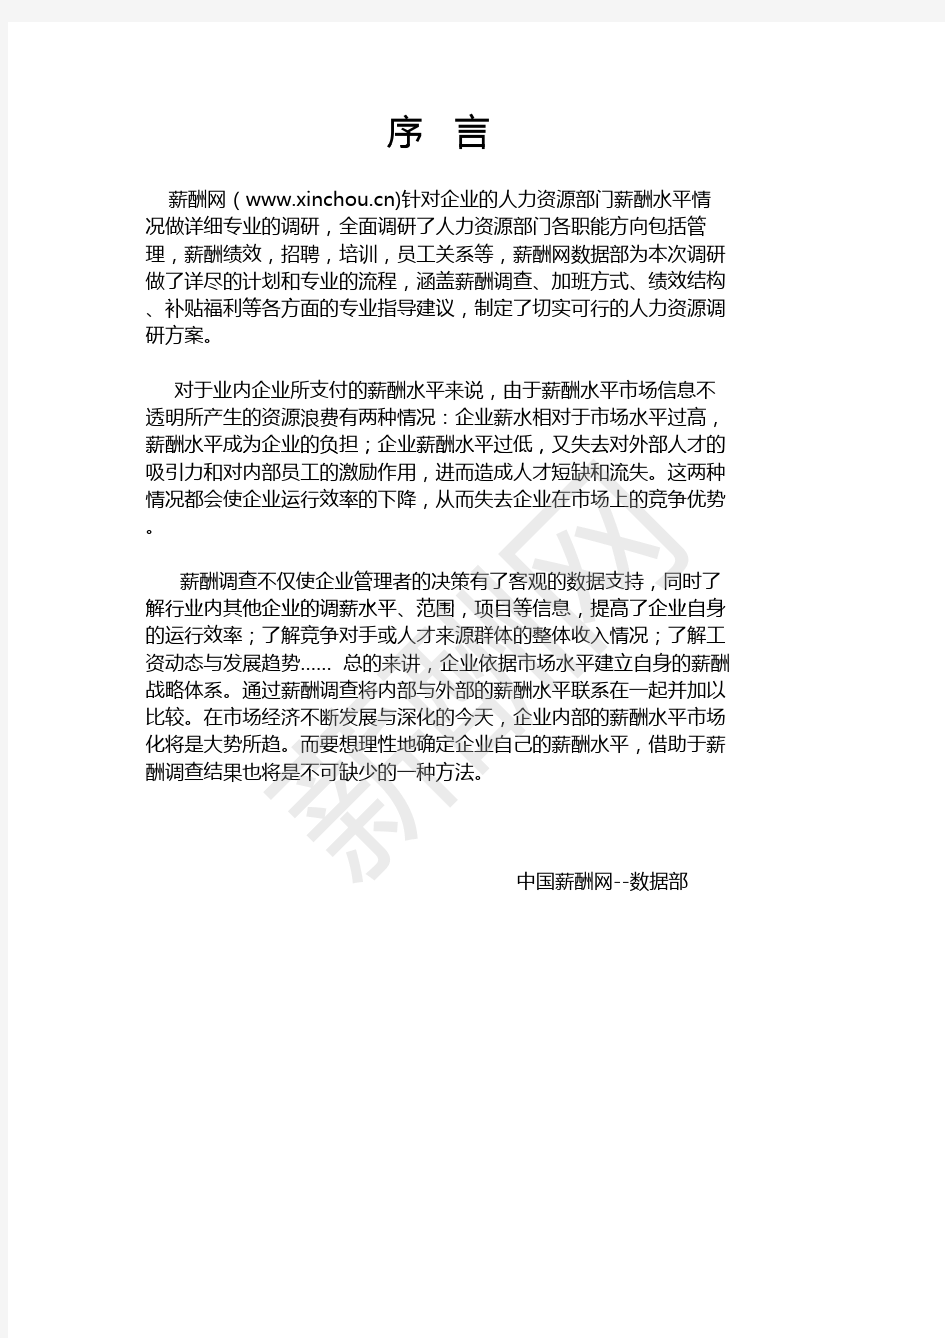 薪酬报告系列-2020广州地区人力资源部门薪酬调查报告